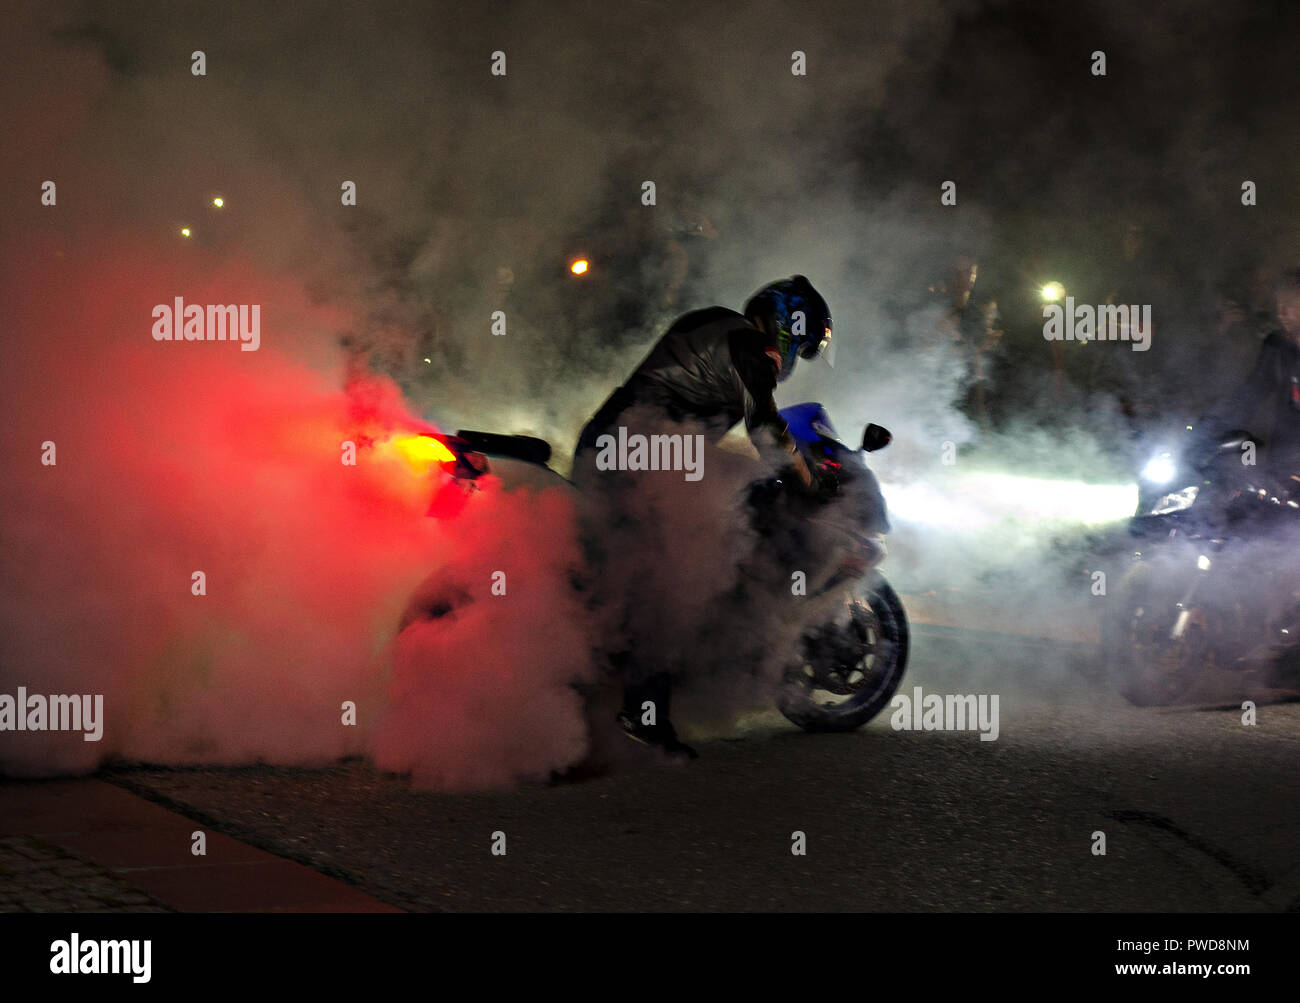 А espectacular moto show nocturno con un montón de humo y un neumático de neumáticos. Muchos de adrenalina. Iluminación roja y blanca. Foto de stock